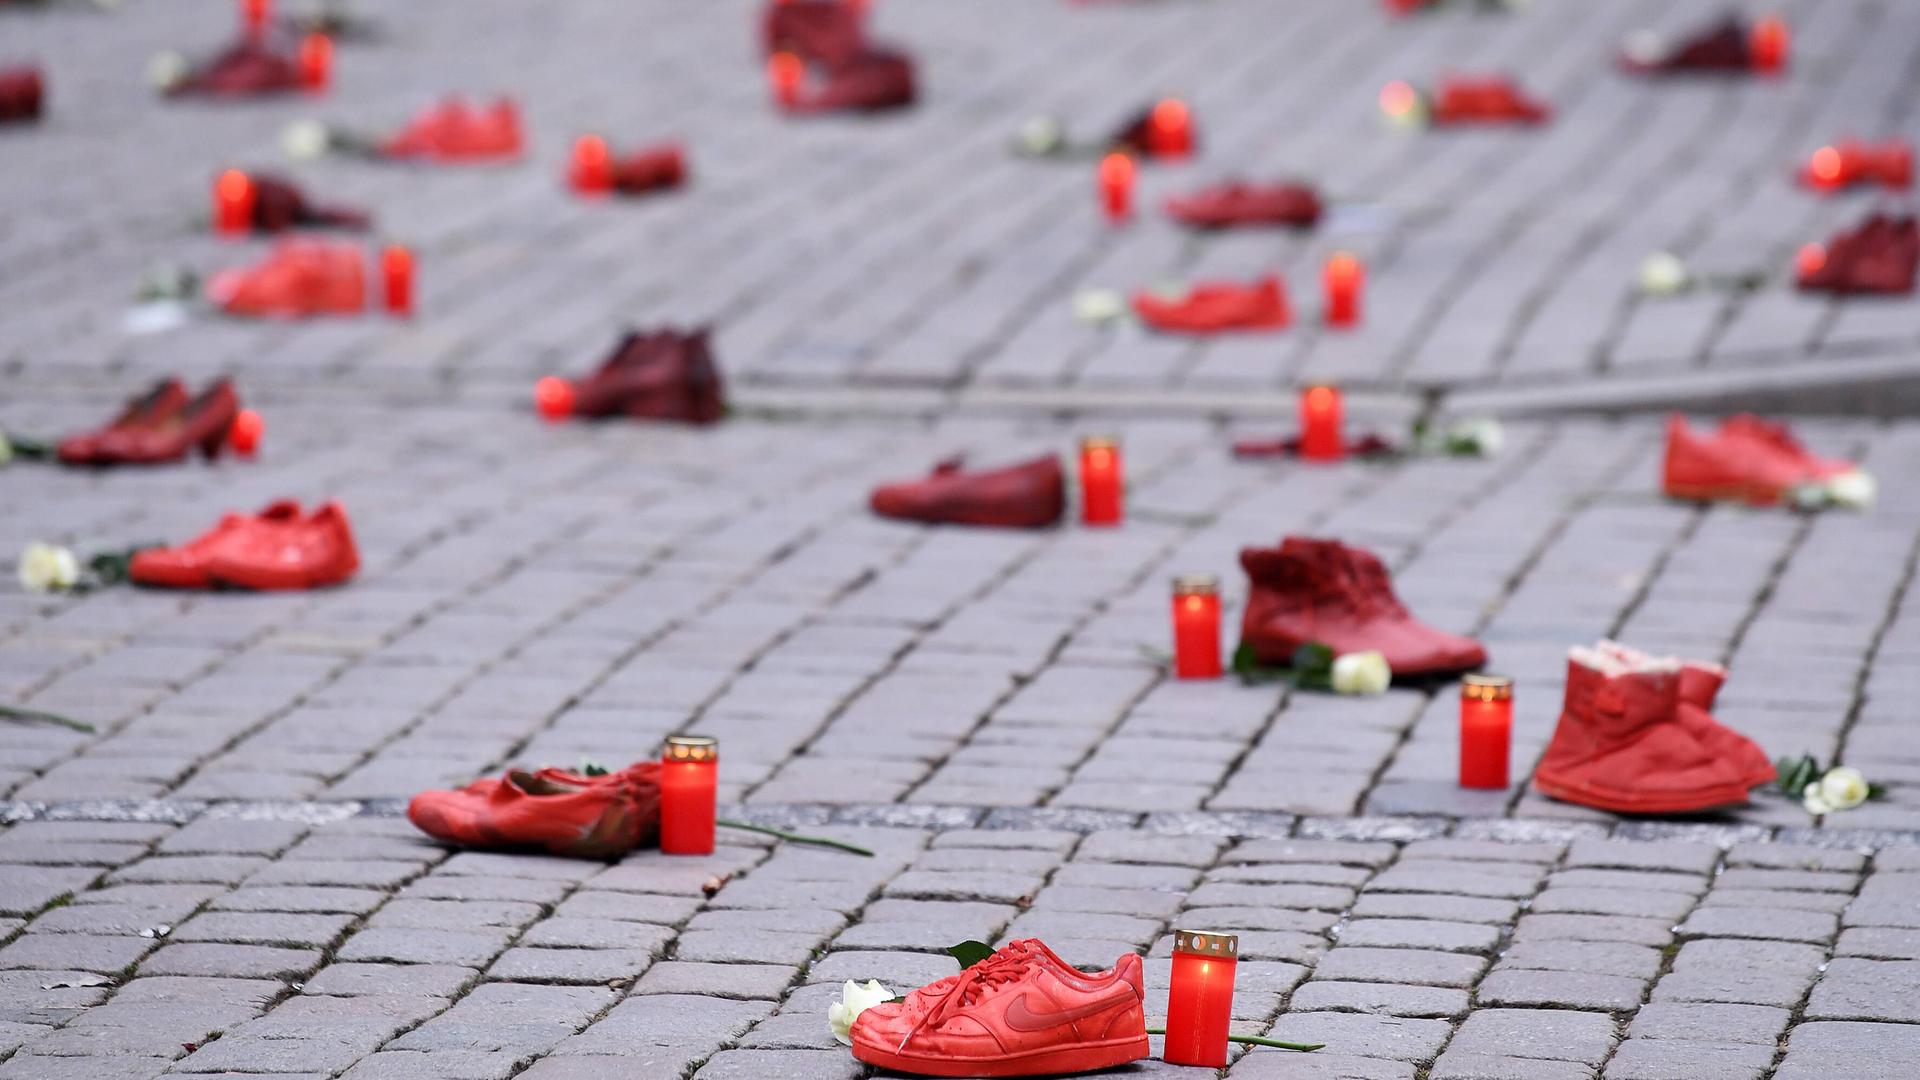 Schuh-Aktion zum Thema Femizide zum Internationalen Tag gegen Gewalt an Frauen am 25.11.2021 in Tübingen: Rote Schuhpaare stehen zusammen mit Grablichtern und weißen Rosen auf dem Tübinger Marktplatz.